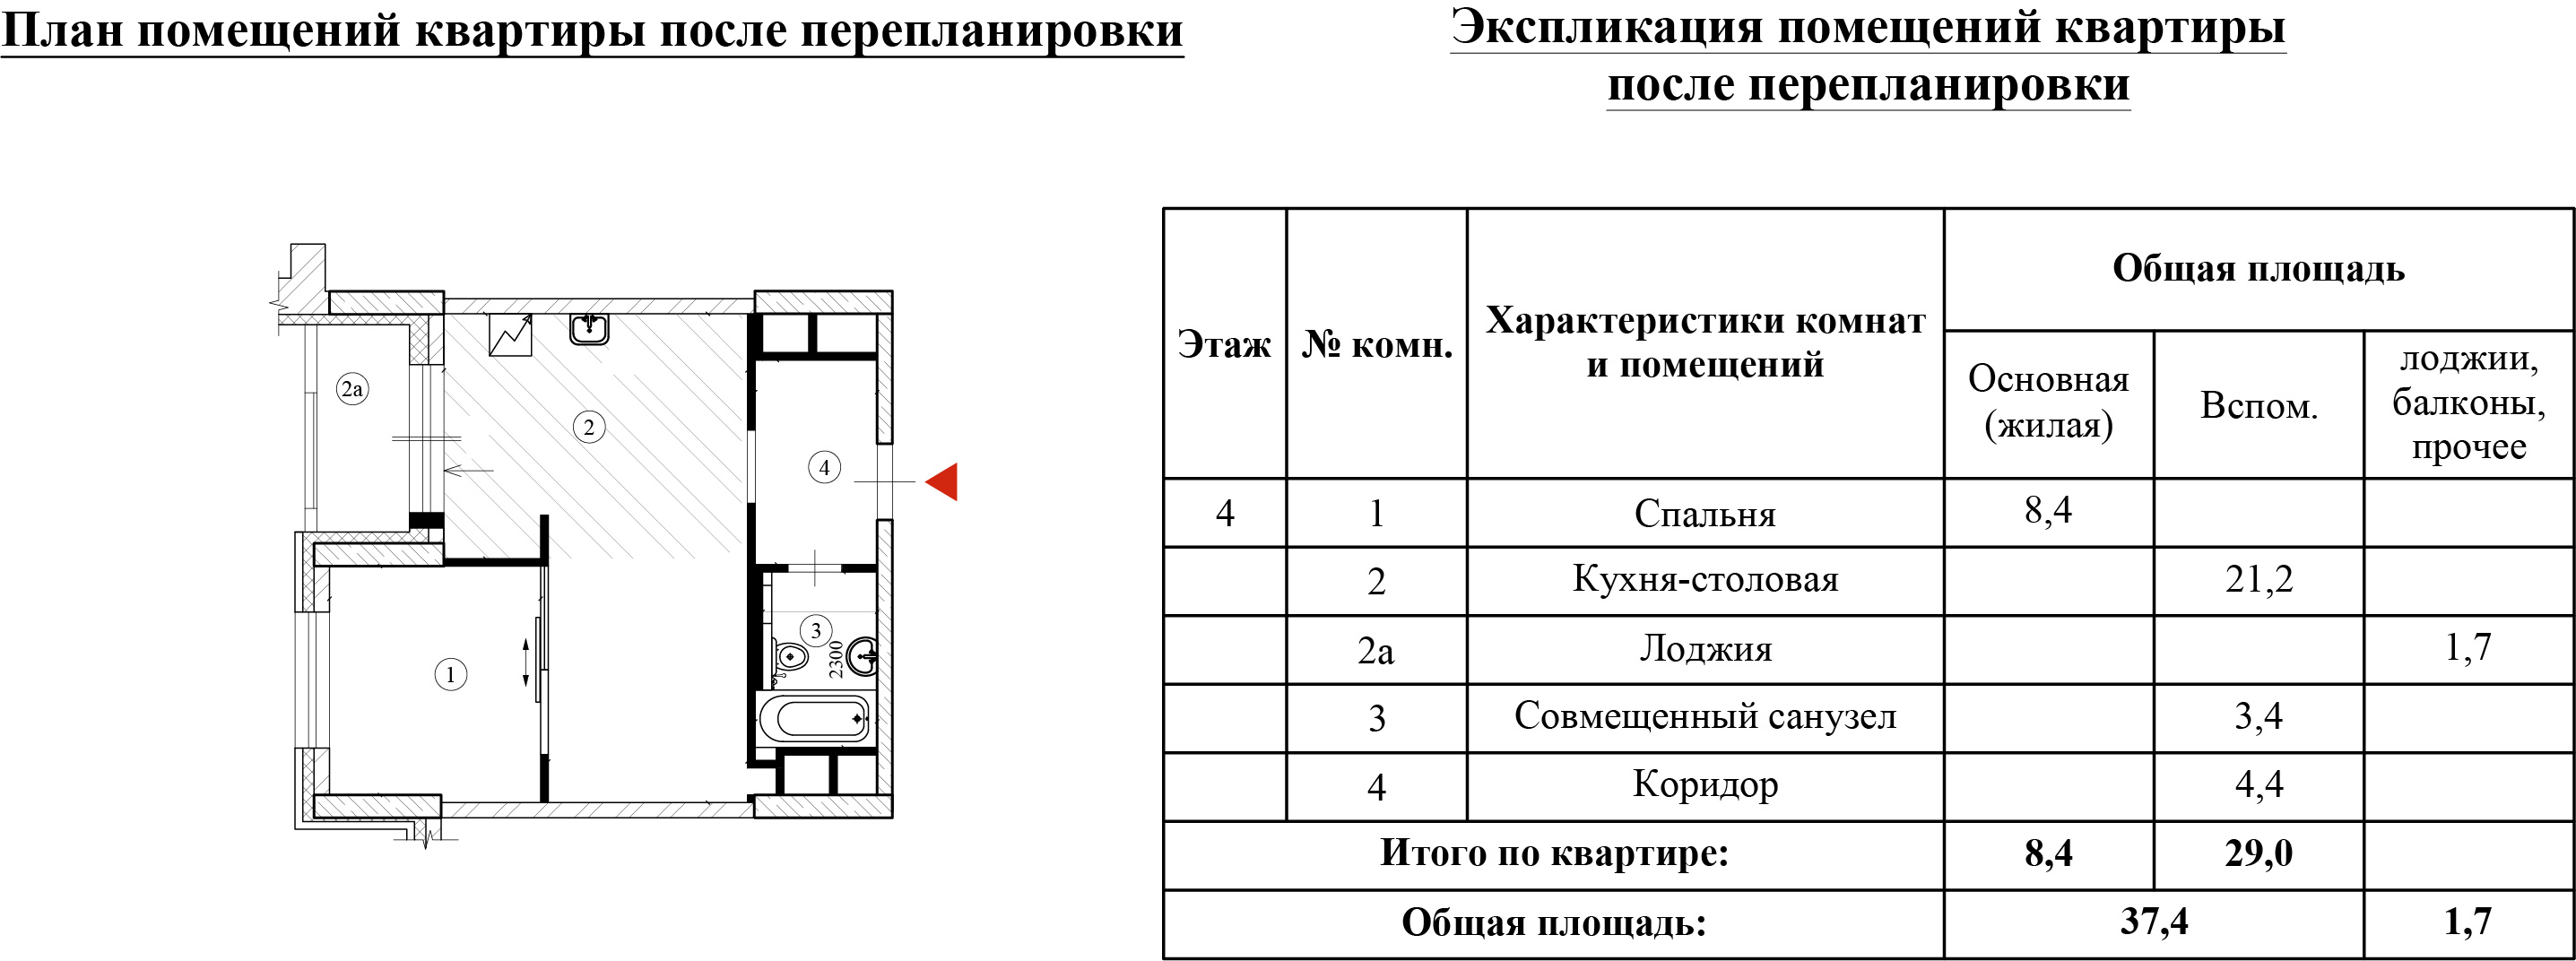 Пример проекта перепланировки для квартиры в монолитном доме ЖК «Династия»